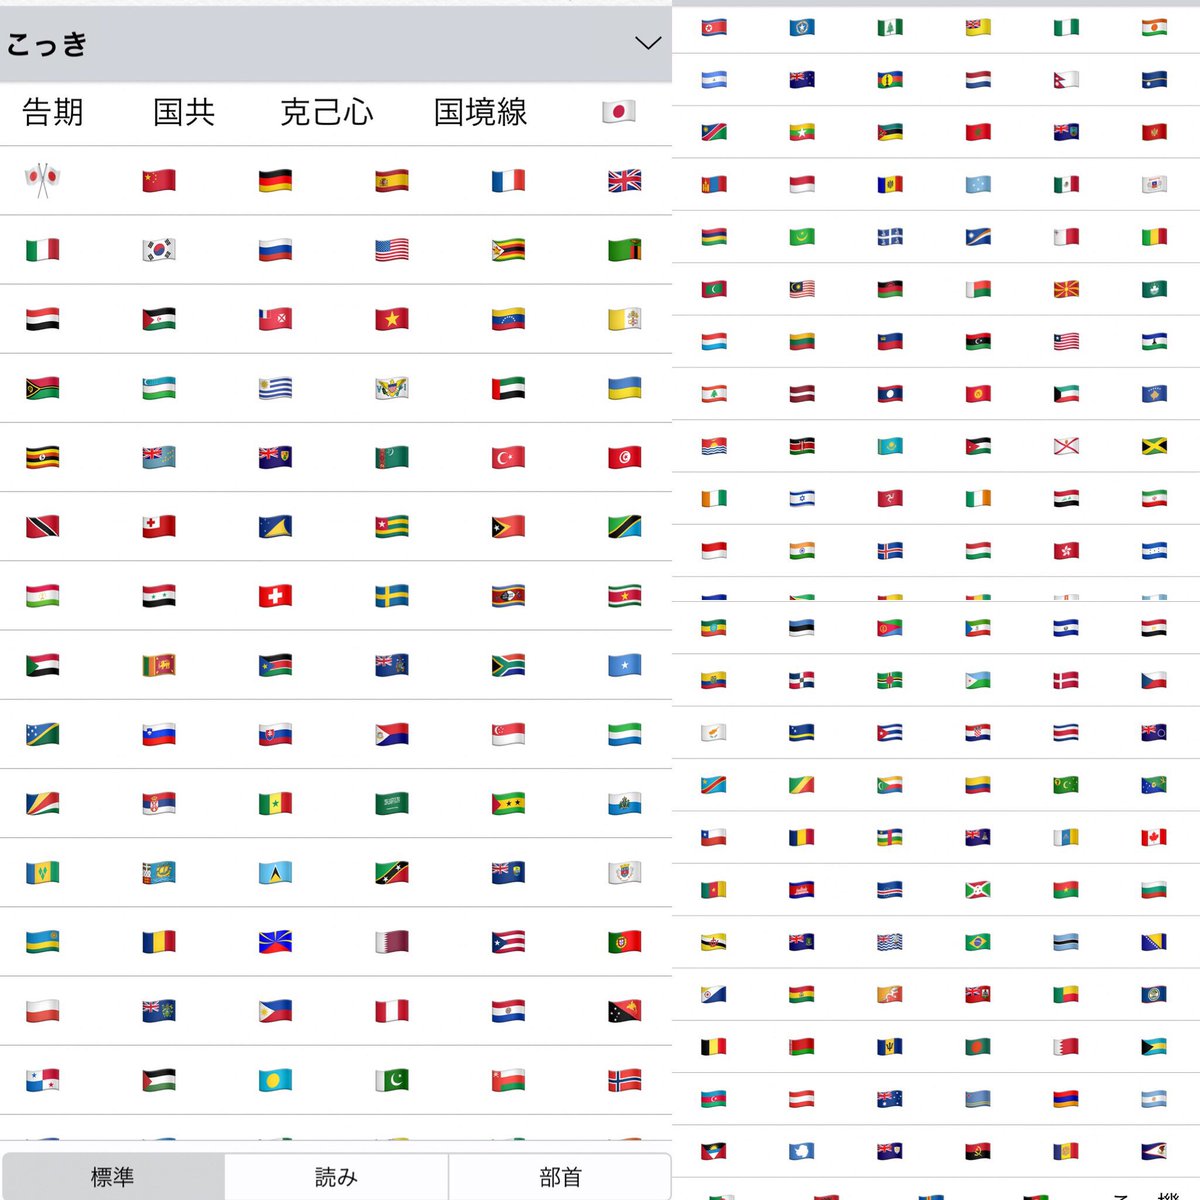 台湾人 Ios を更新するたびに思うのは 台湾人の使うキーボードでは 台湾 と入力すると台湾国旗 が表示されるのに 日本語キーボードでは 台湾 はおろか 国旗 と入力しても意地で台湾国旗を表示させない不具合が残っているなぁ ということ 笑